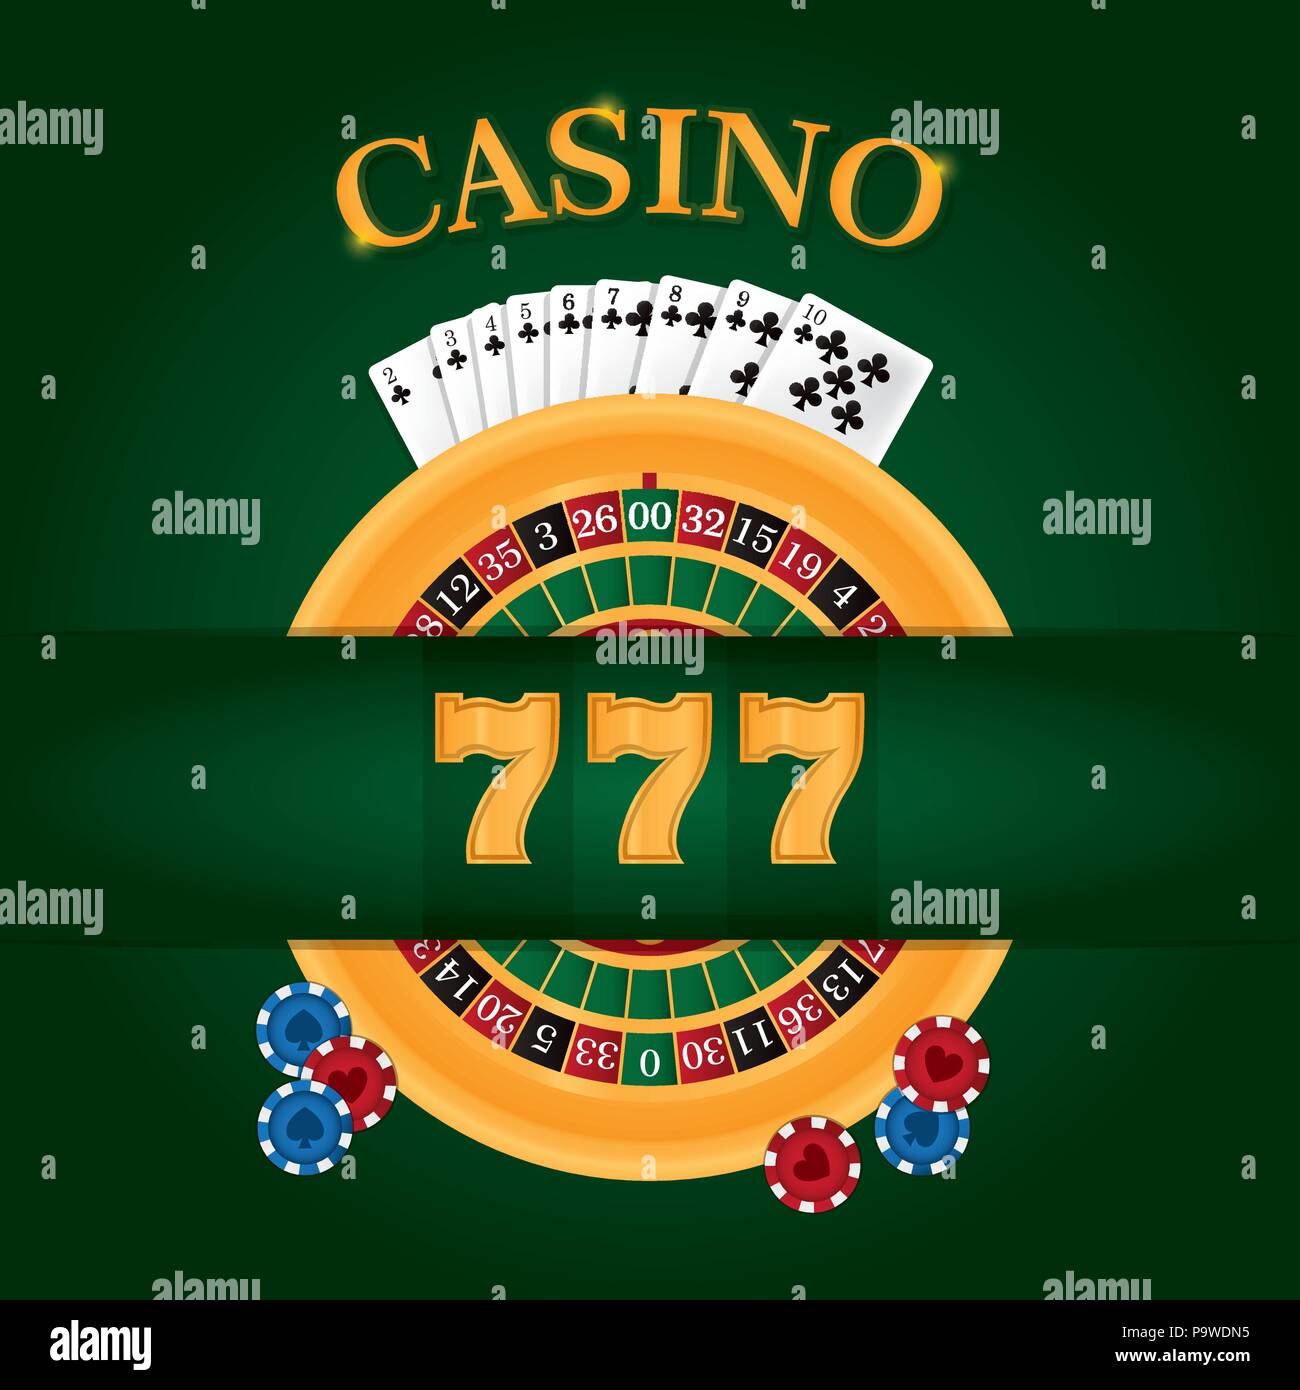 Casino-Spiel-Konzept Stock Vektor